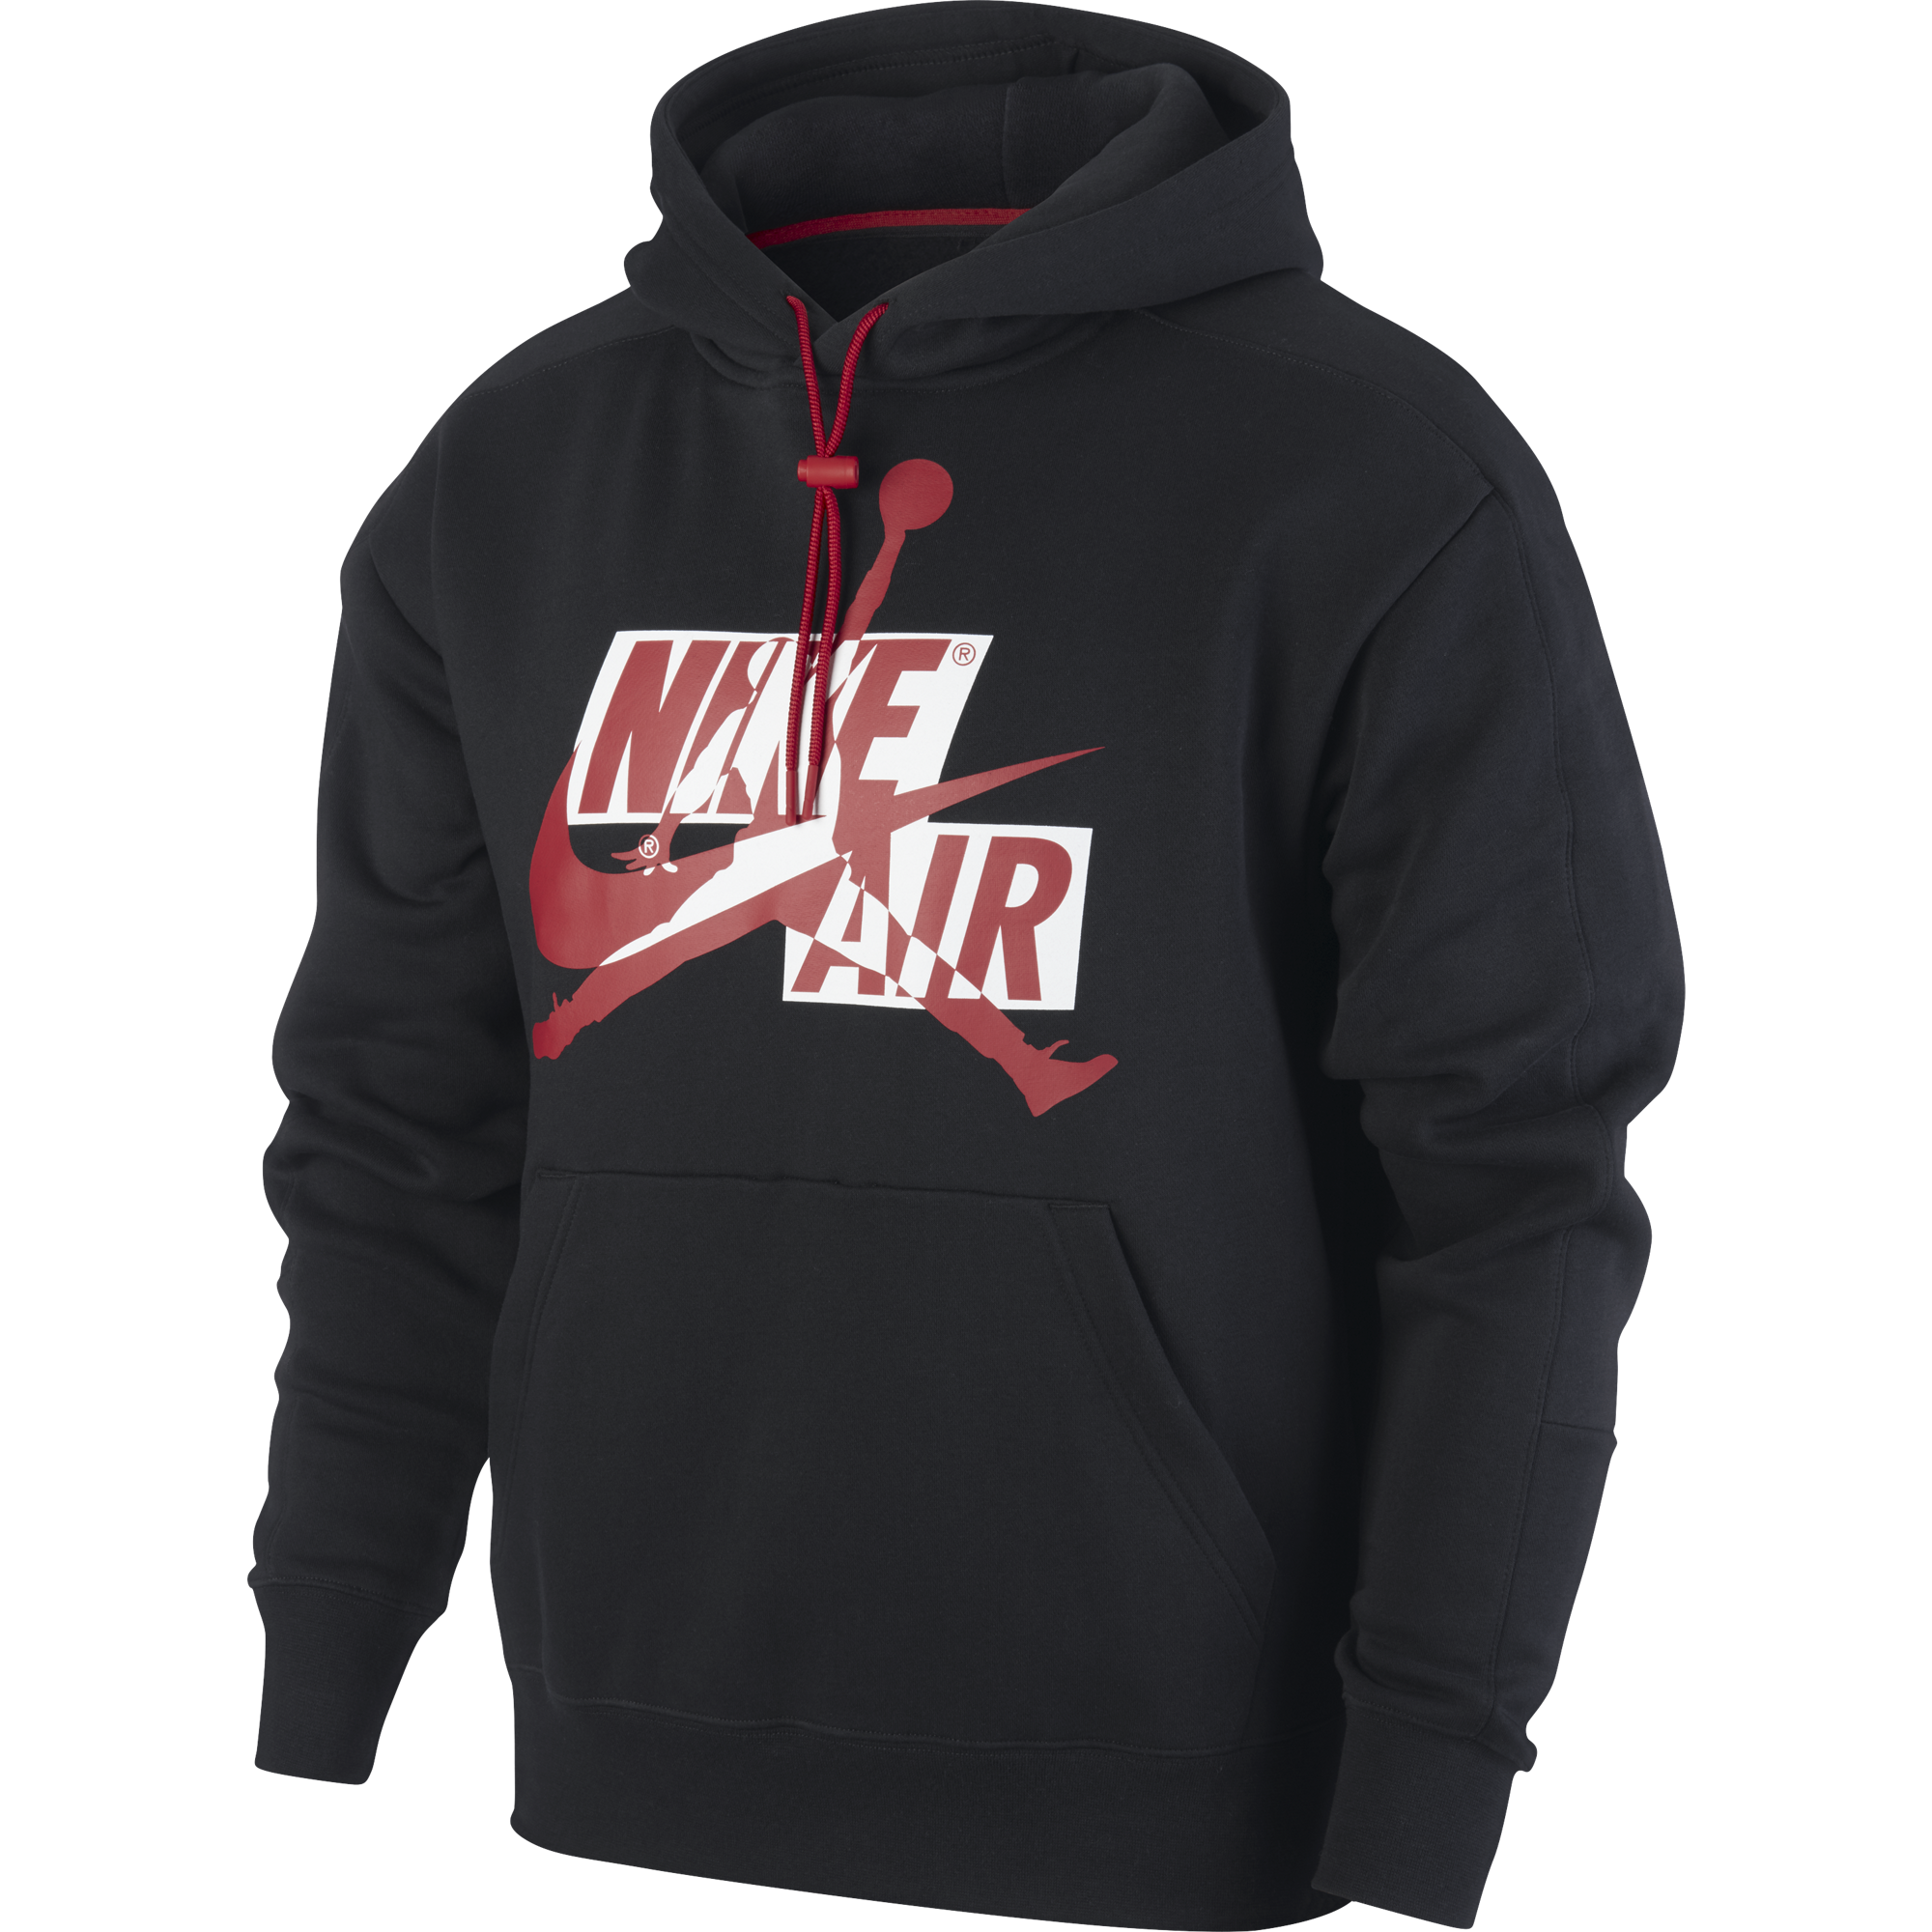 black and red jordan hoodie mens